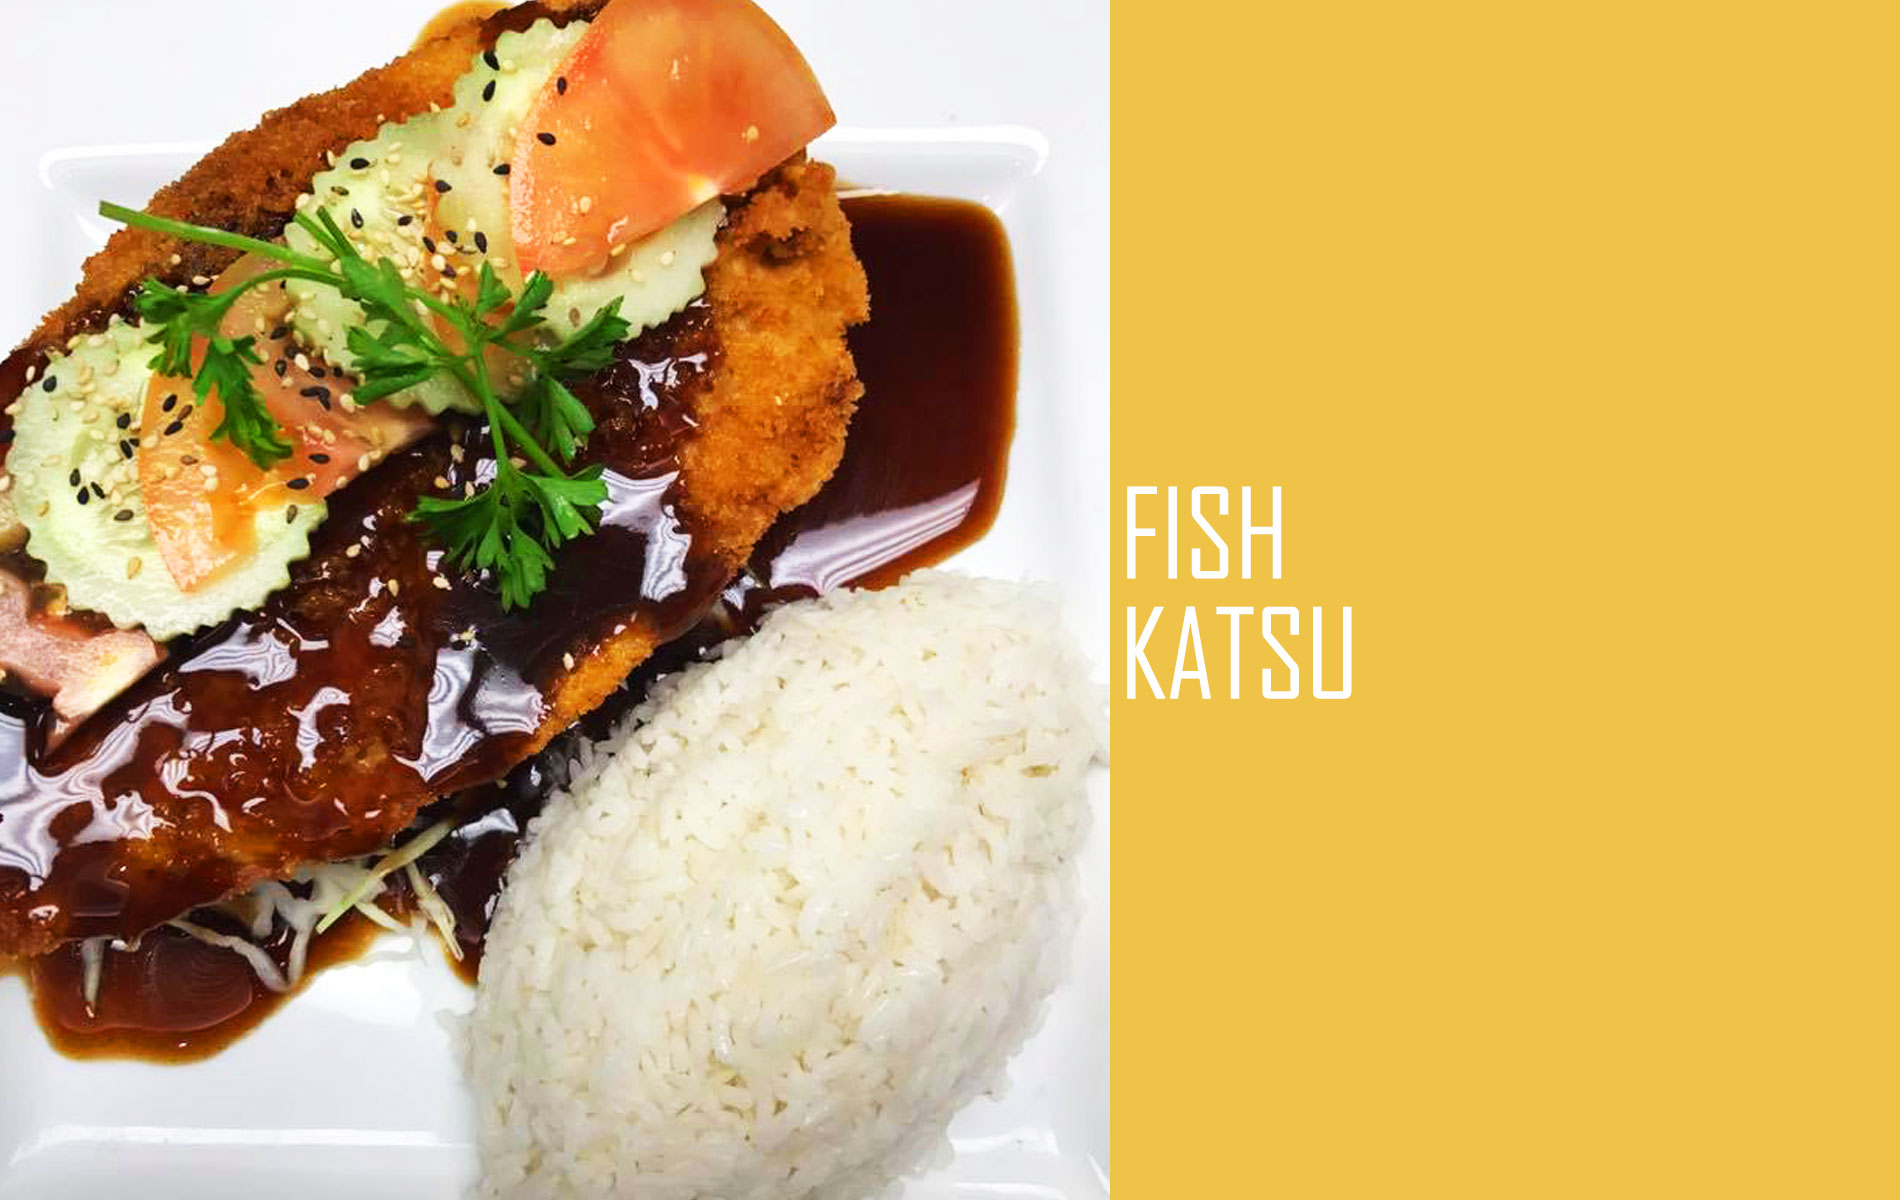 Fish Katsu